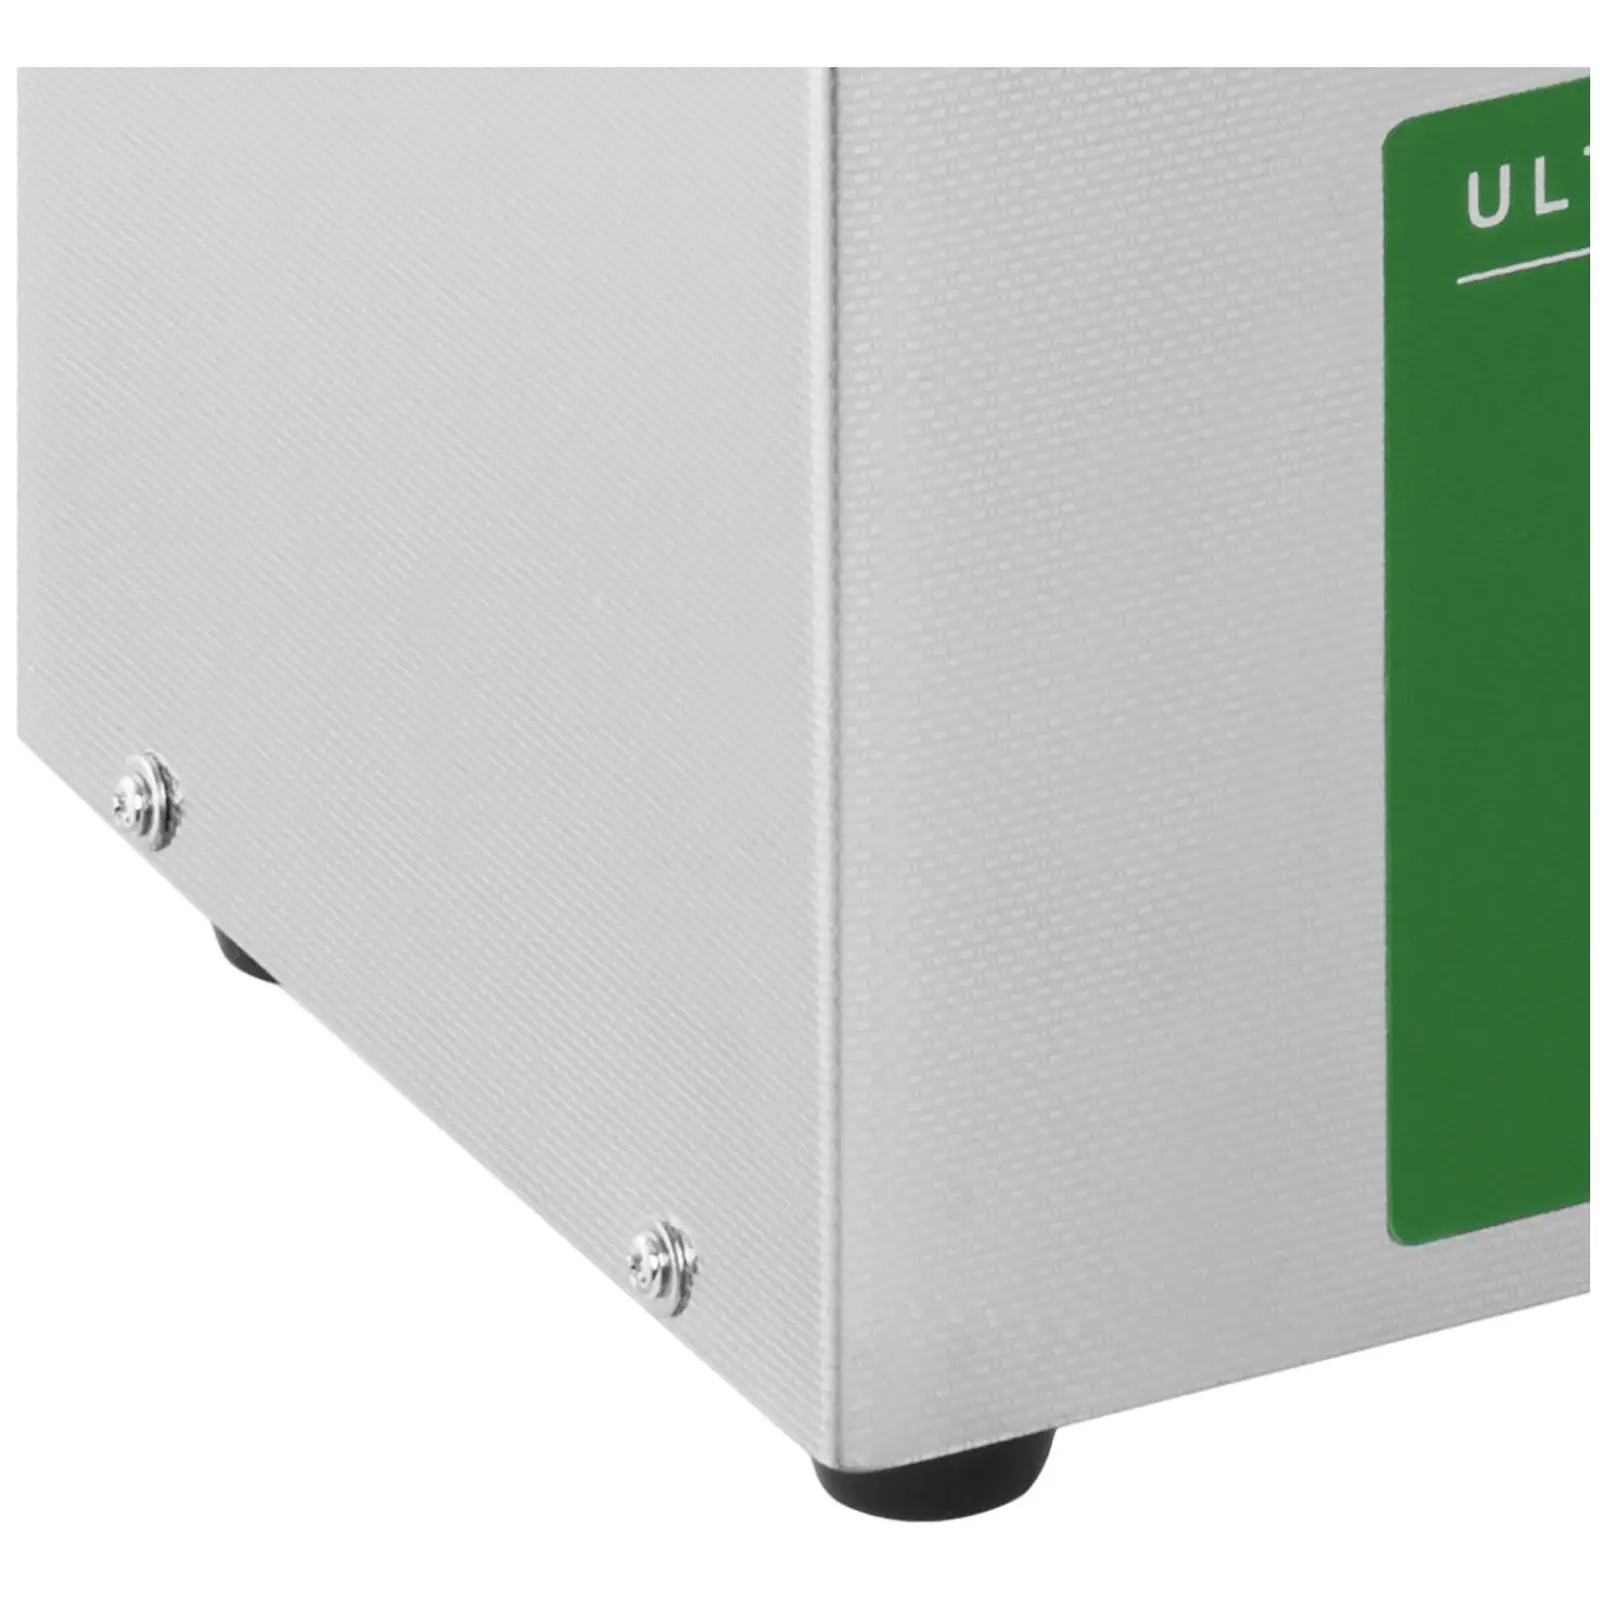 Ultrazvočni čistilnik - 3 litri - 80 W - Memory-Quick Eco